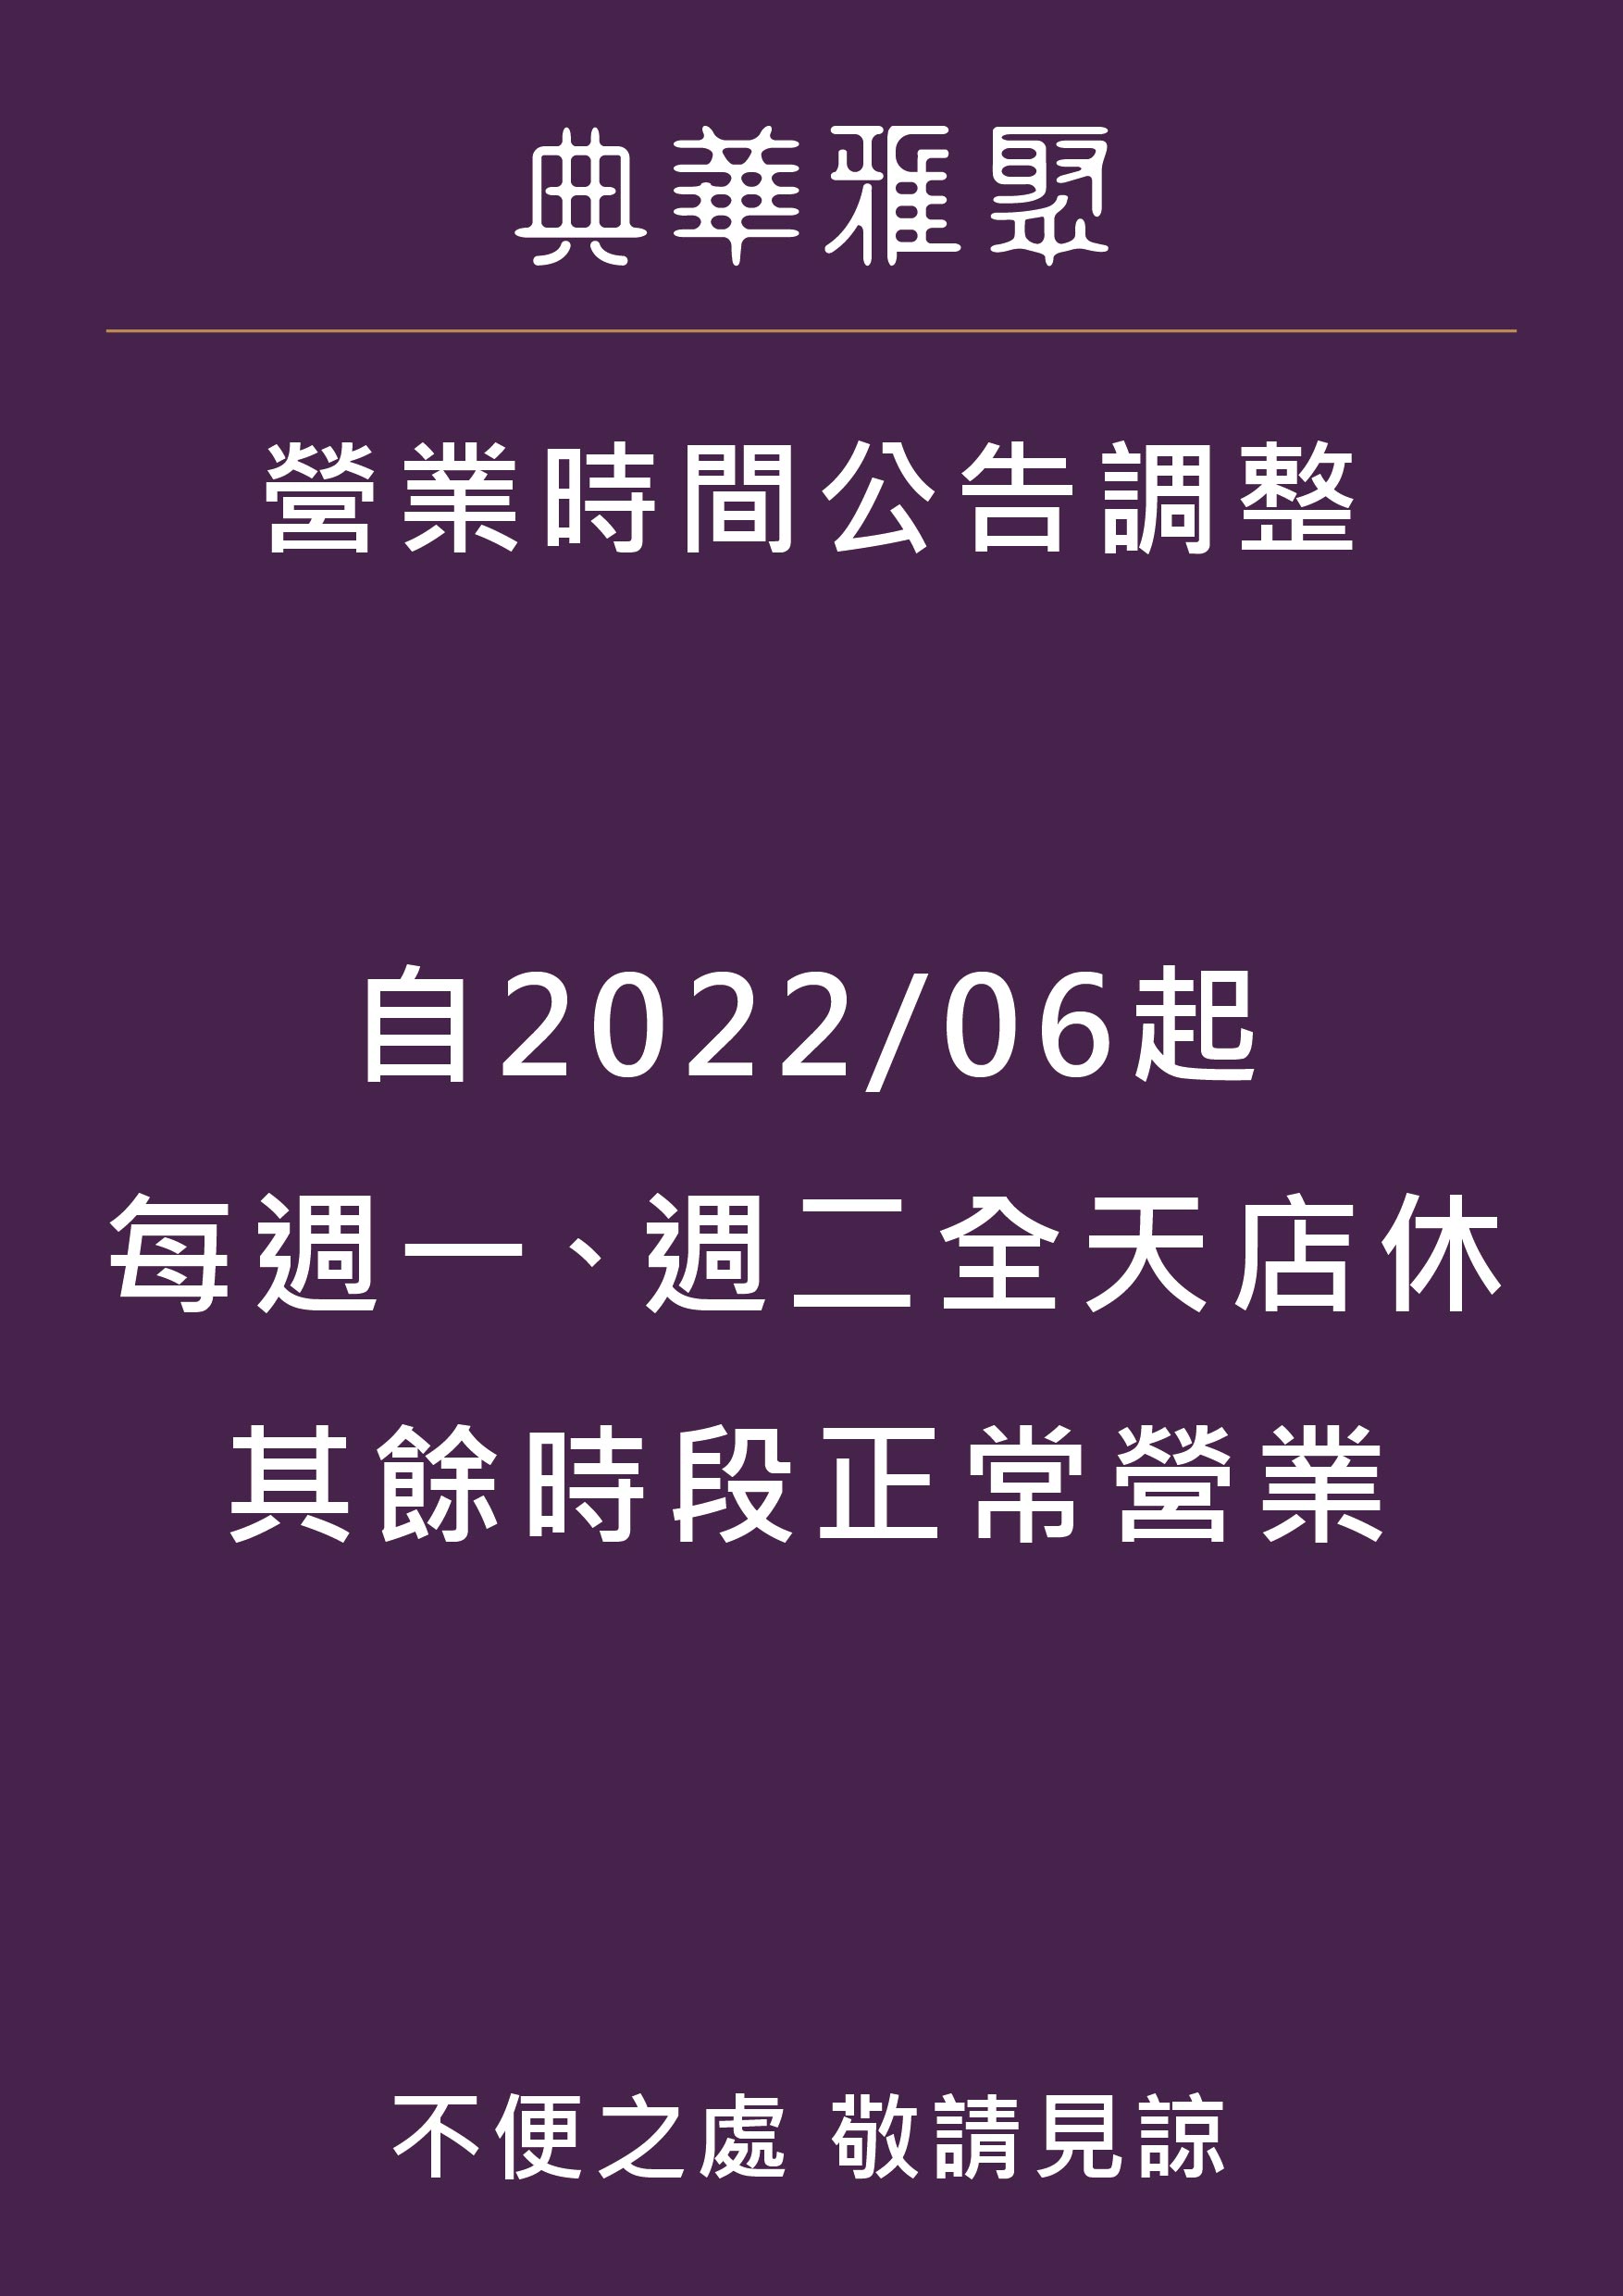 營業時間調整公告20220526 雅聚 A3